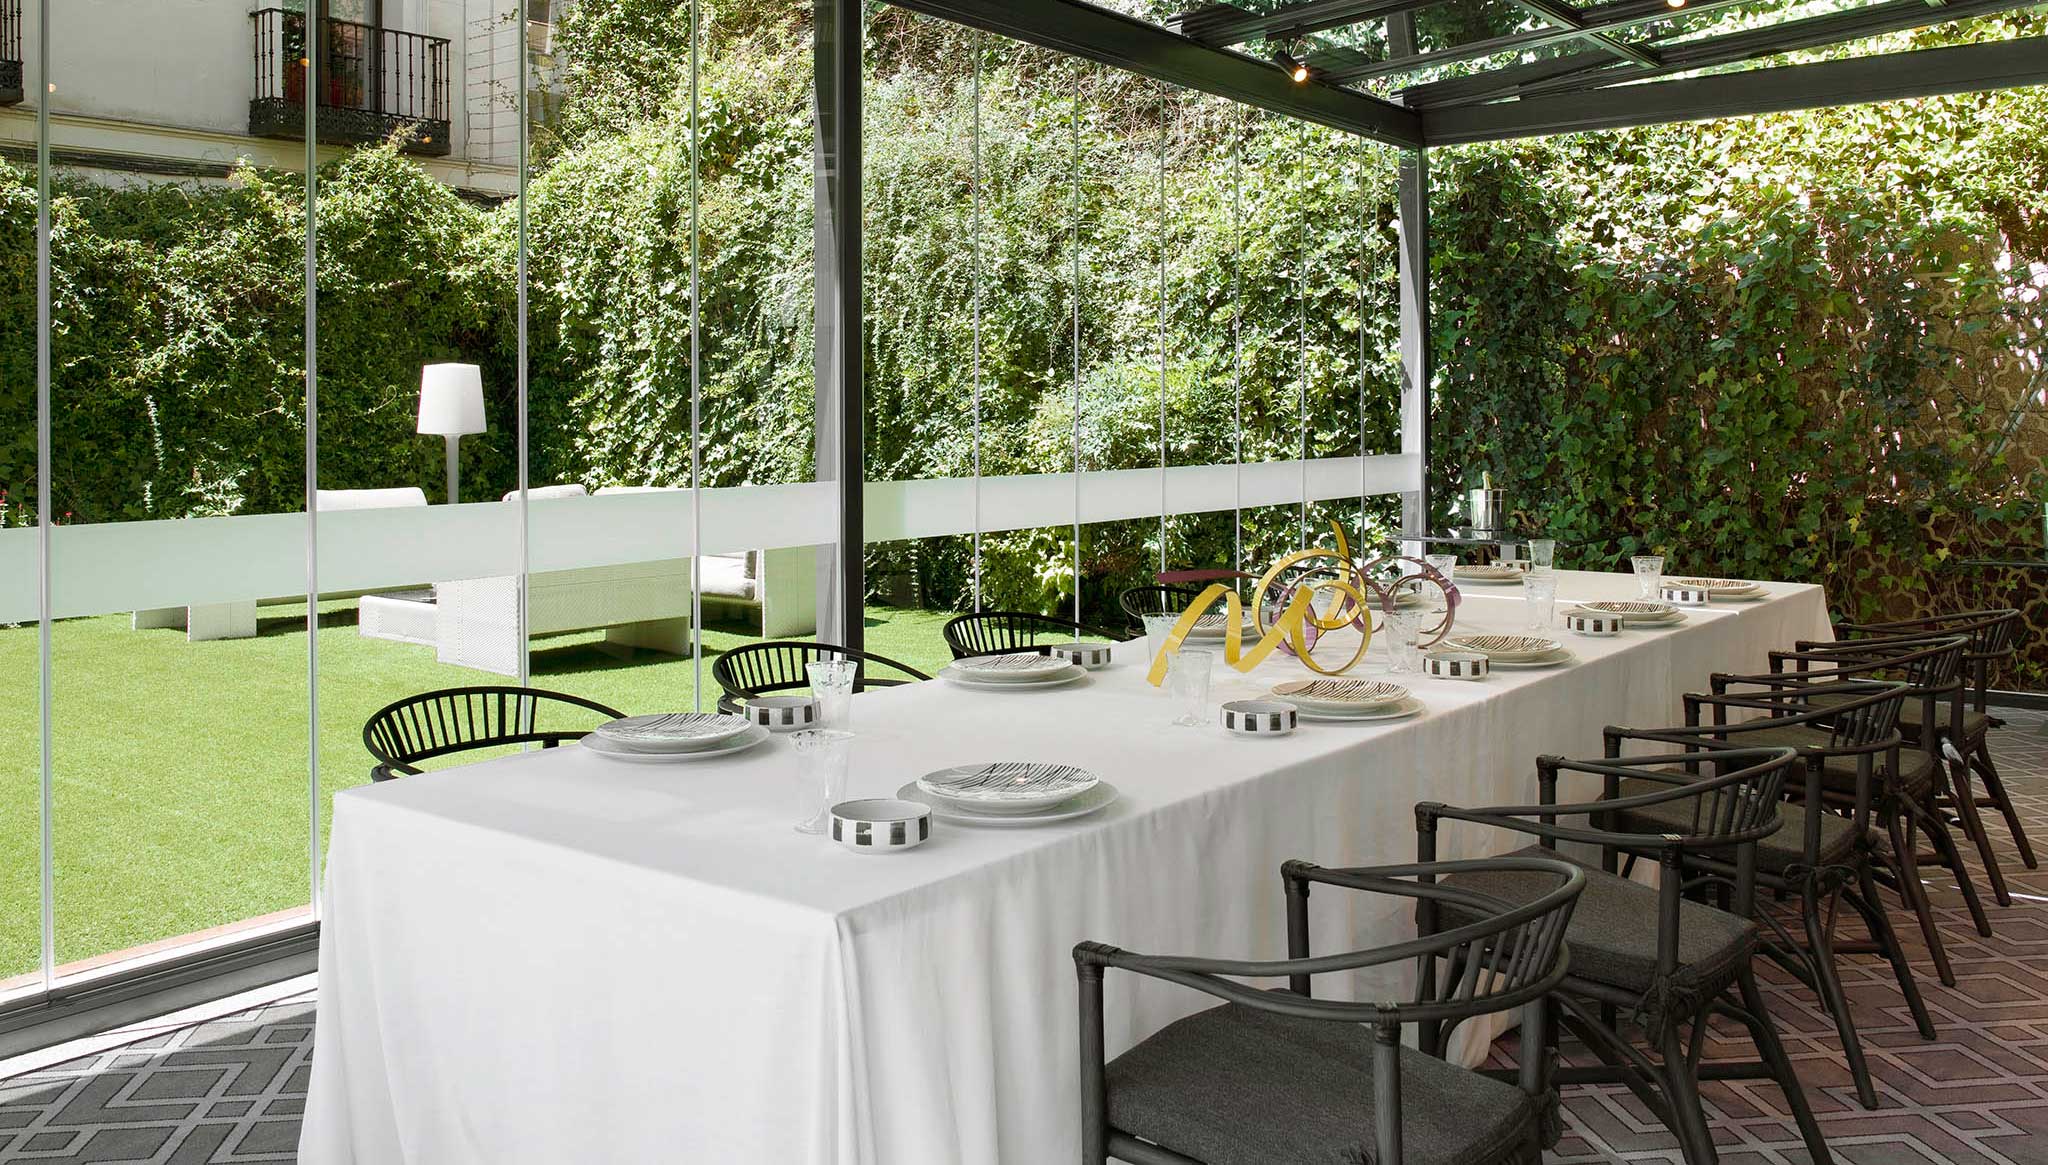 Restaurantes con dos estrellas Michelin que enamoran en Madrid